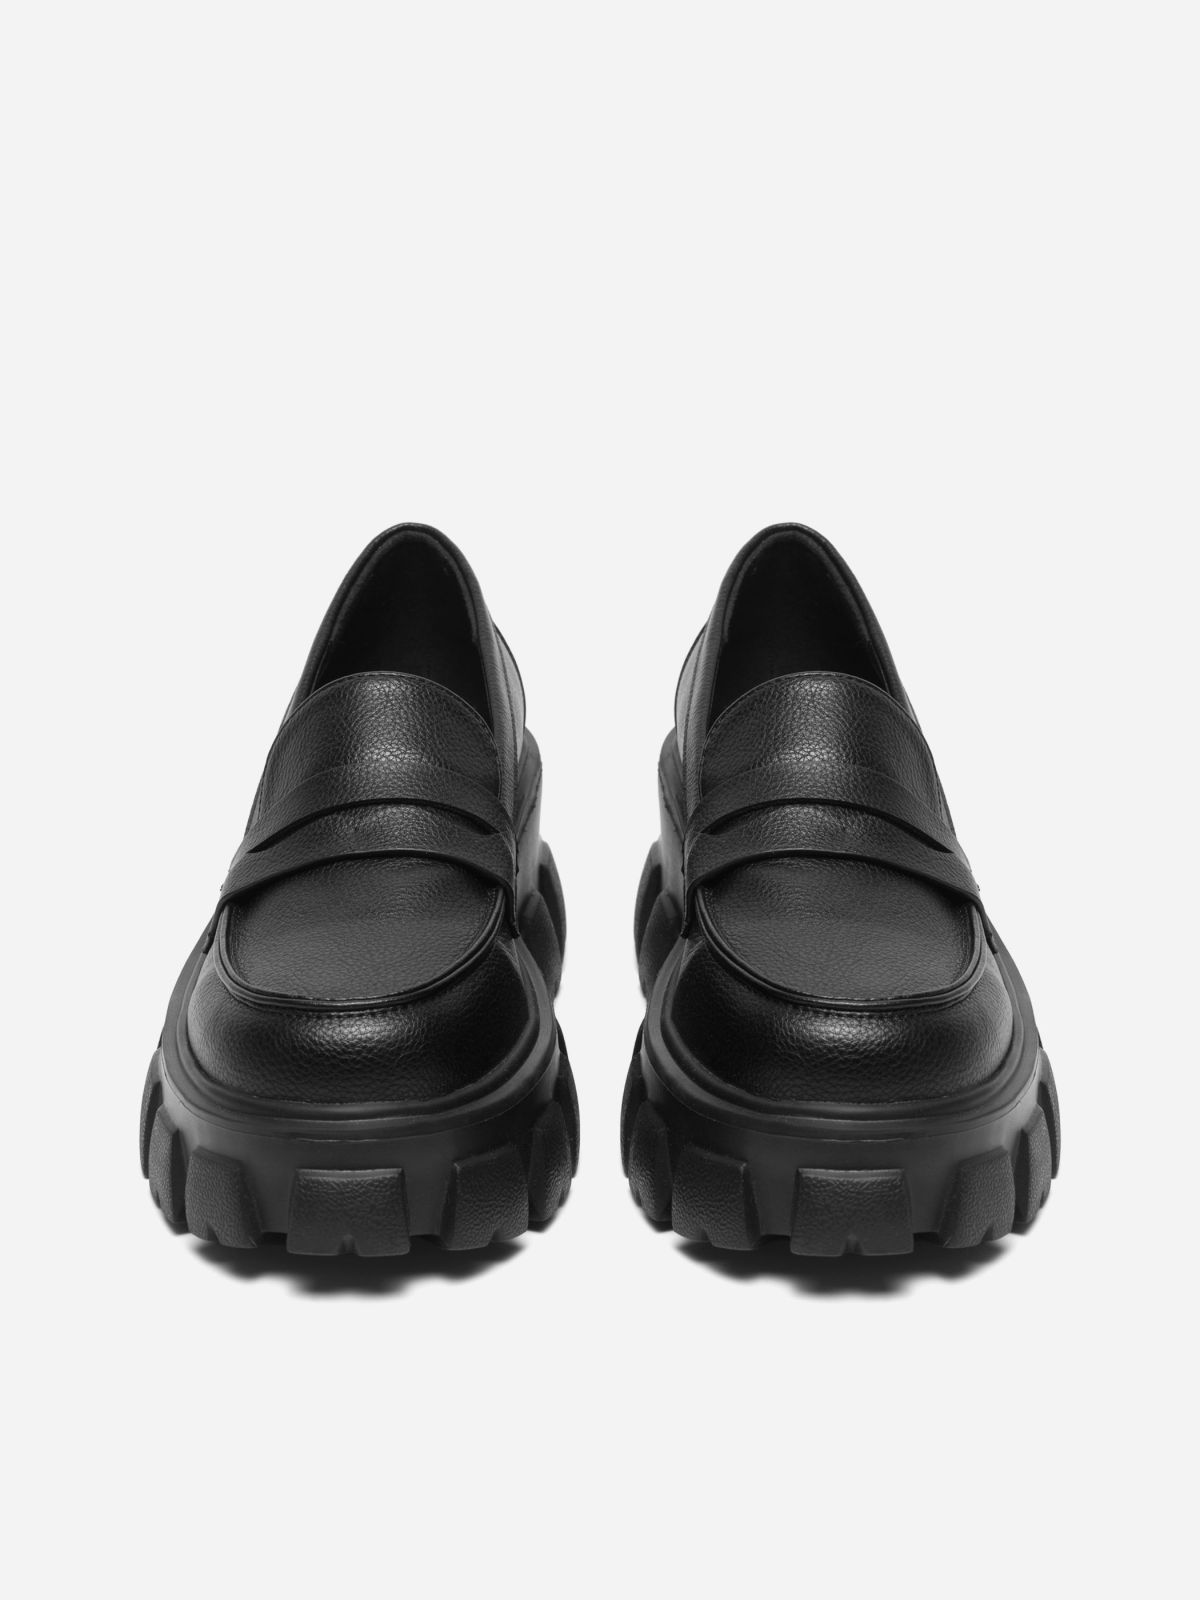  נעלי מוקסין עם סוליית טרקטור / נשים של BIANCO